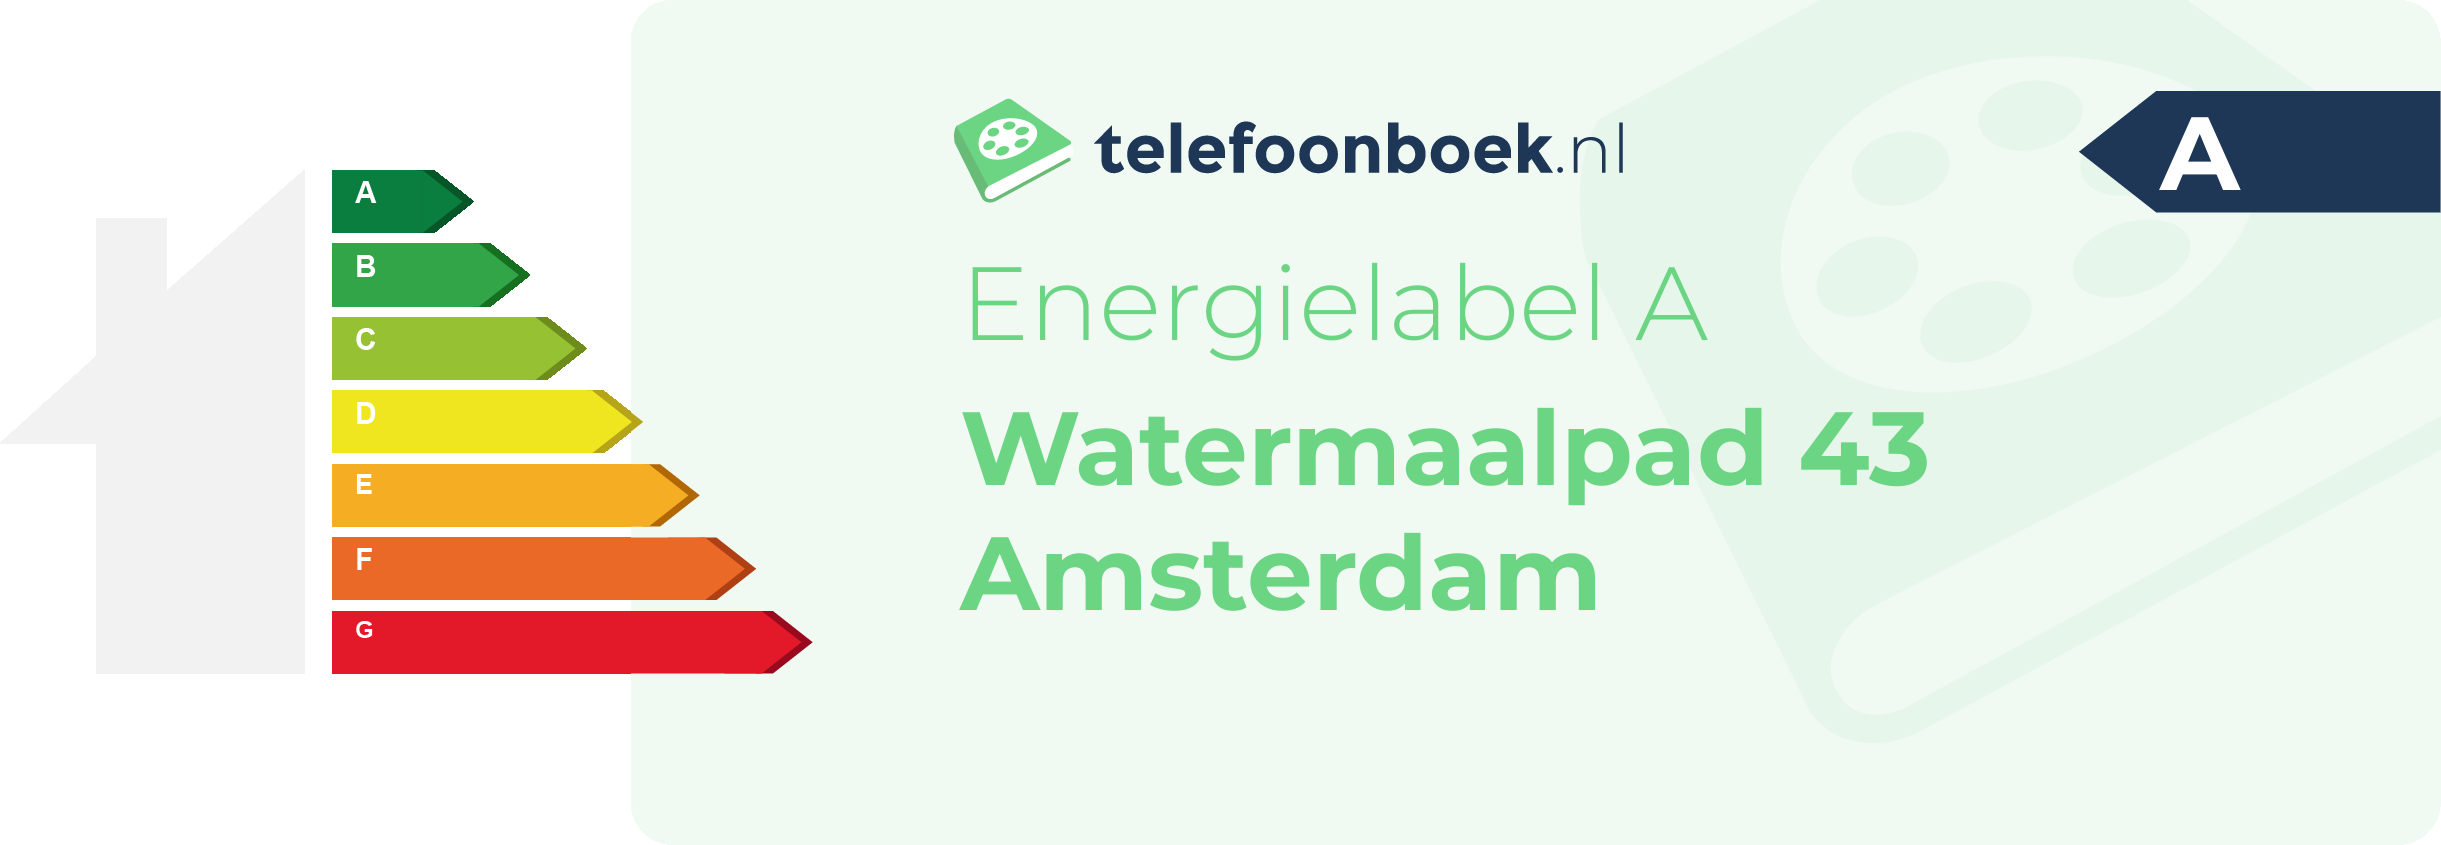 Energielabel Watermaalpad 43 Amsterdam